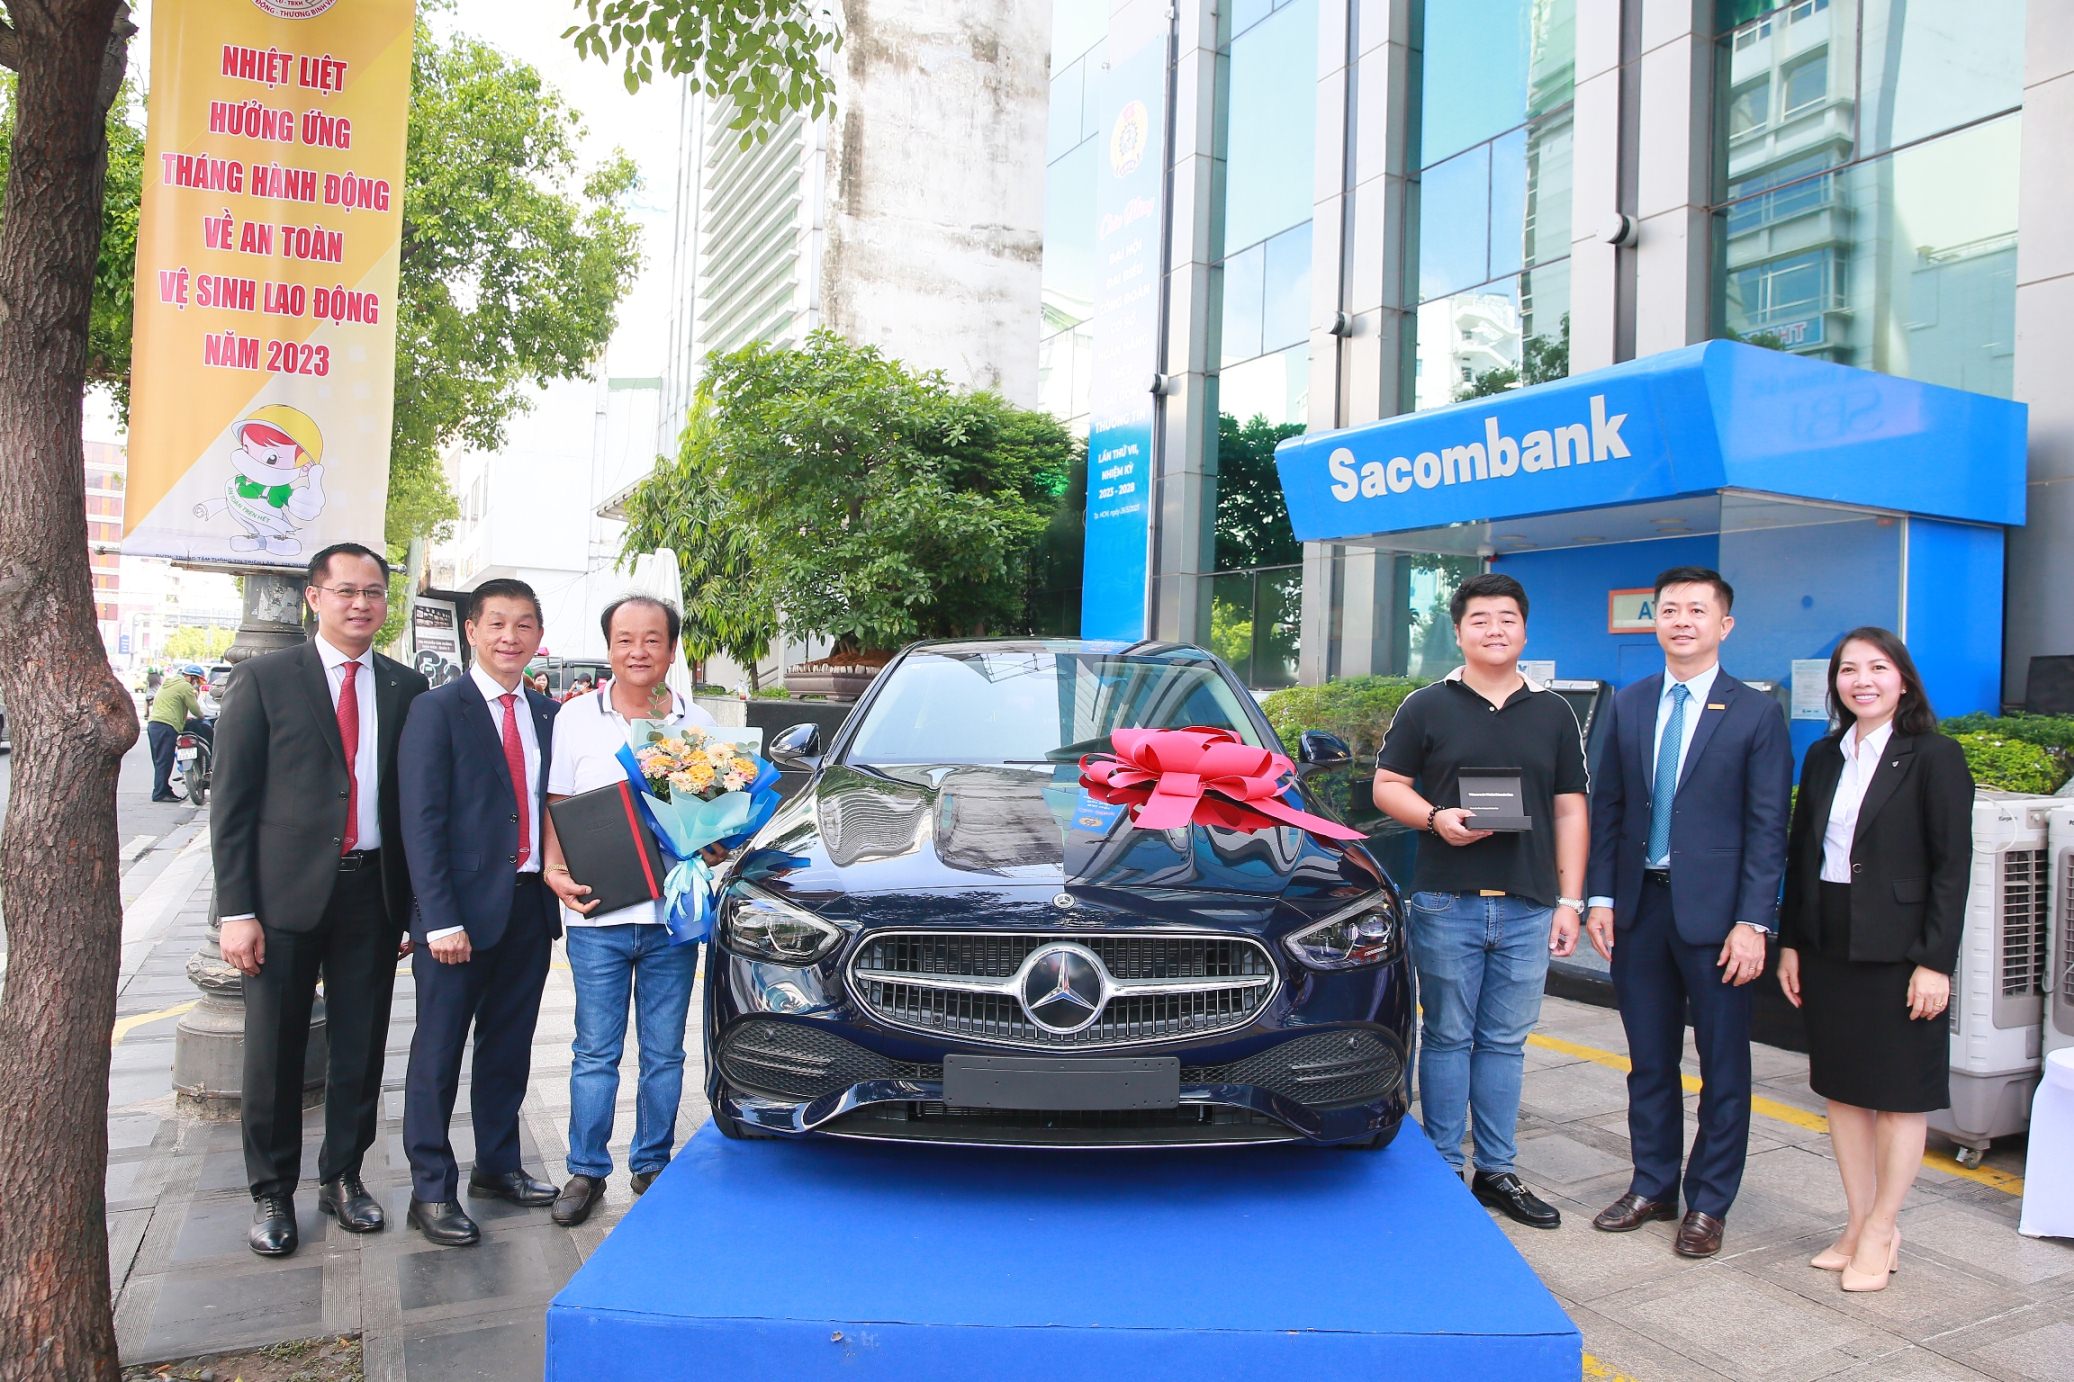 Trao thưởng xe Mercedes cho Khách hàng tham gia bảo hiểm với Dai-ichi Life Việt Nam tại Sacombank...